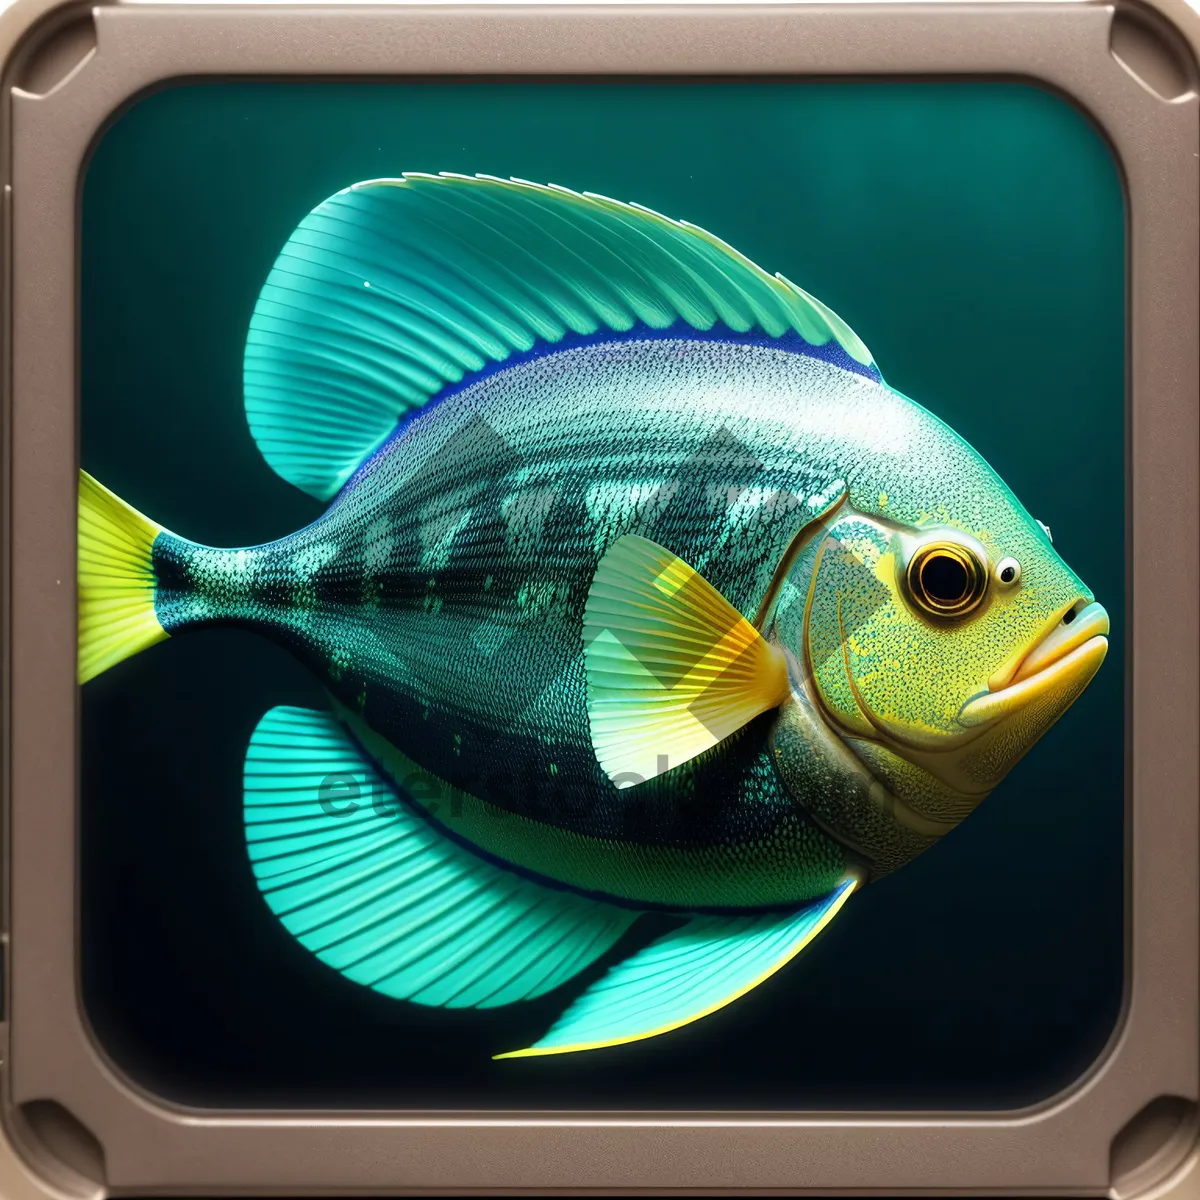 Picture of Colorful Tropical Fish in Digital Aquarium